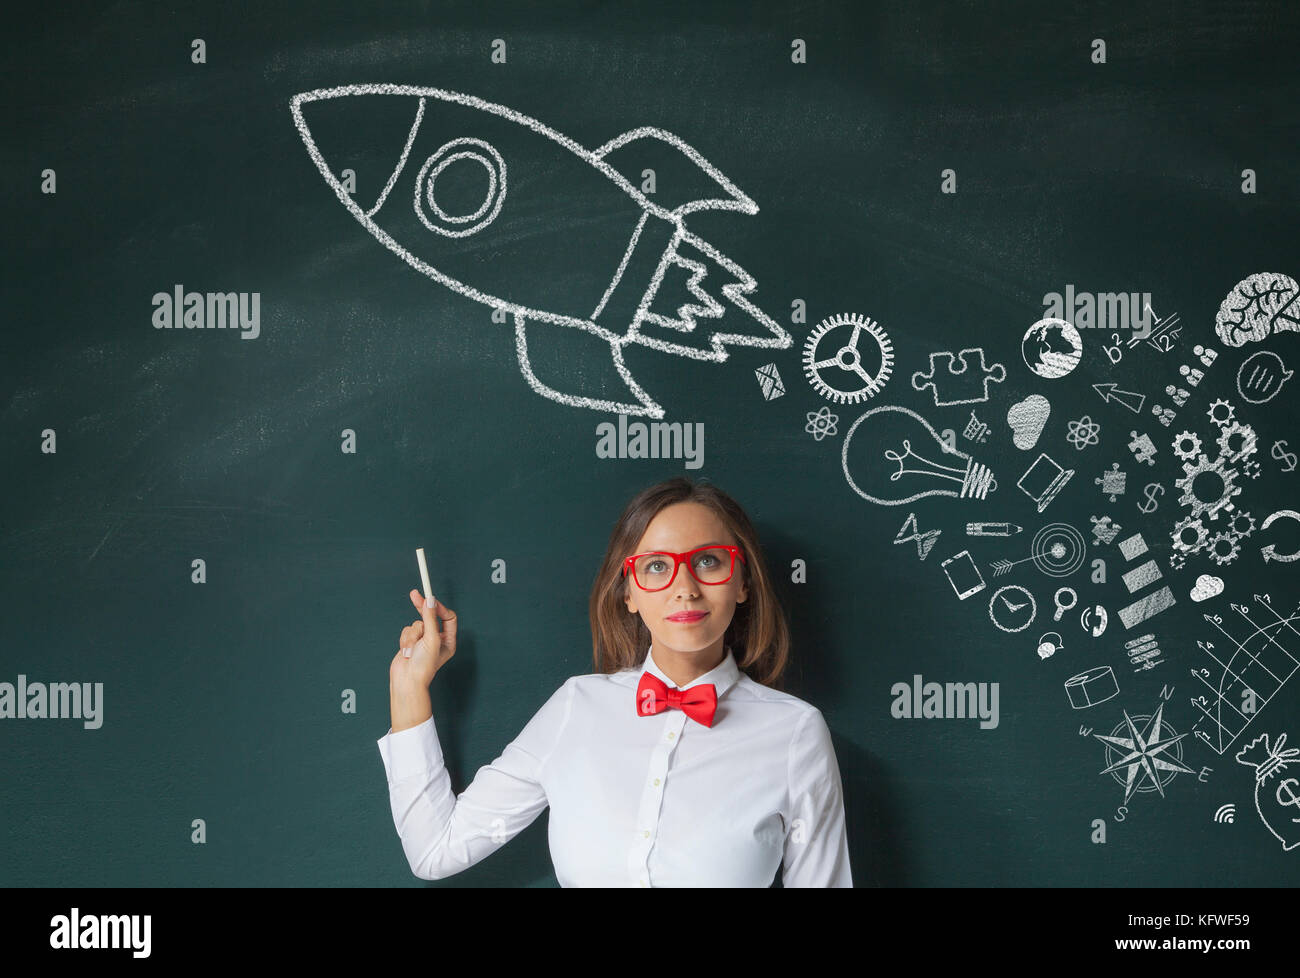 Jeune femme montrer signe de lancement de fusées on chalkboard Banque D'Images